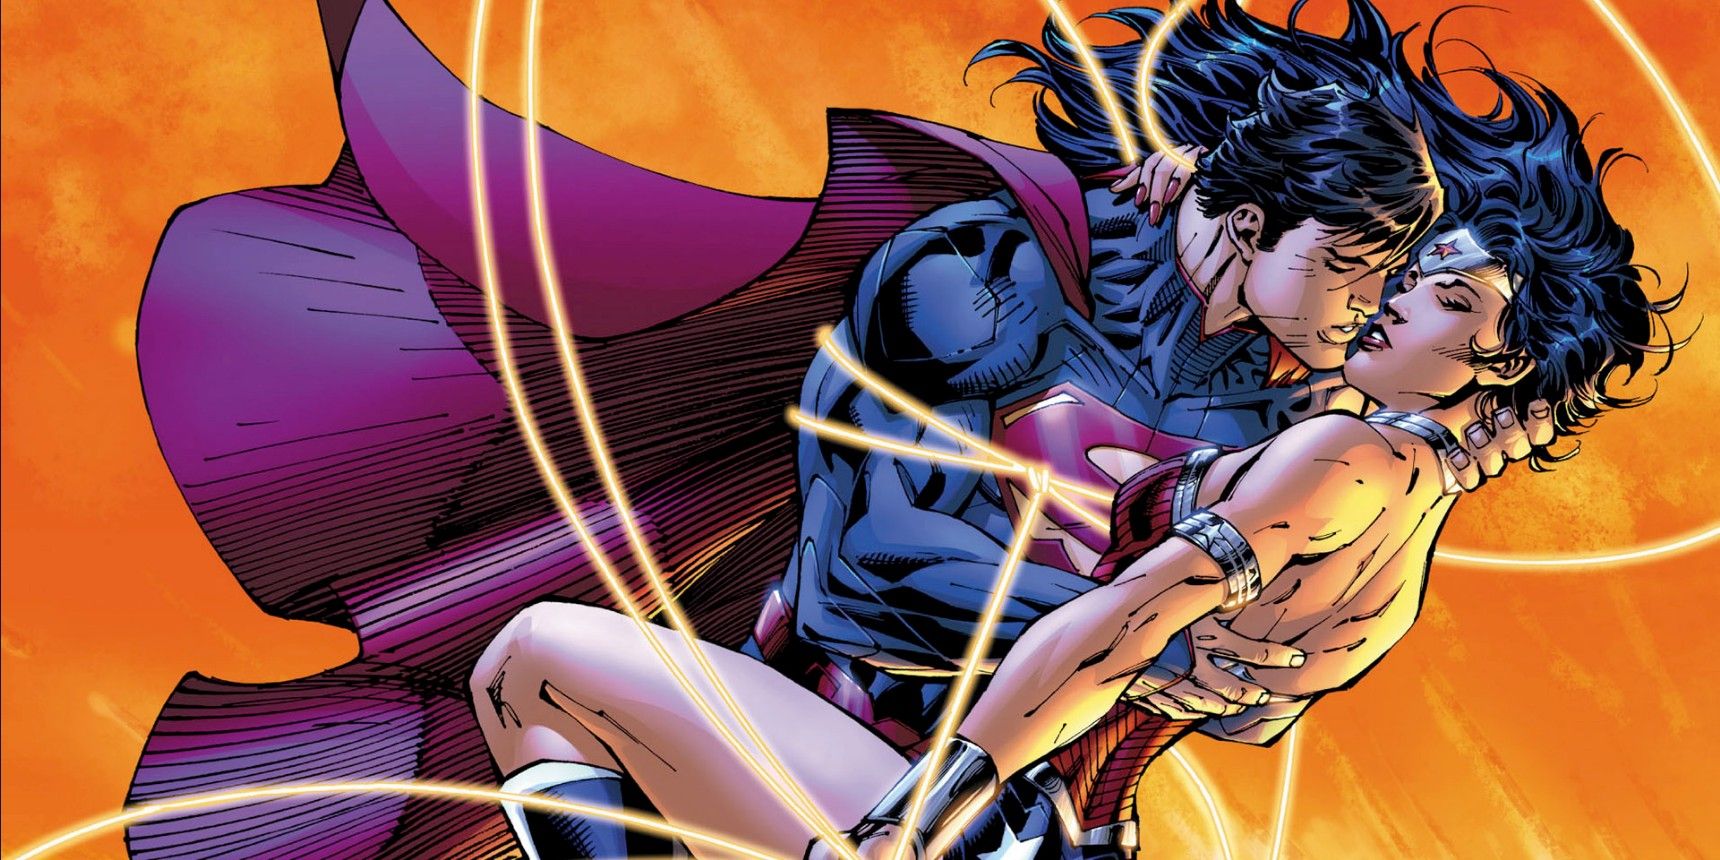 "Ese día cambió las cosas": el romance de Superman y Wonder Woman terminó debido a una decisión en una fracción de segundo